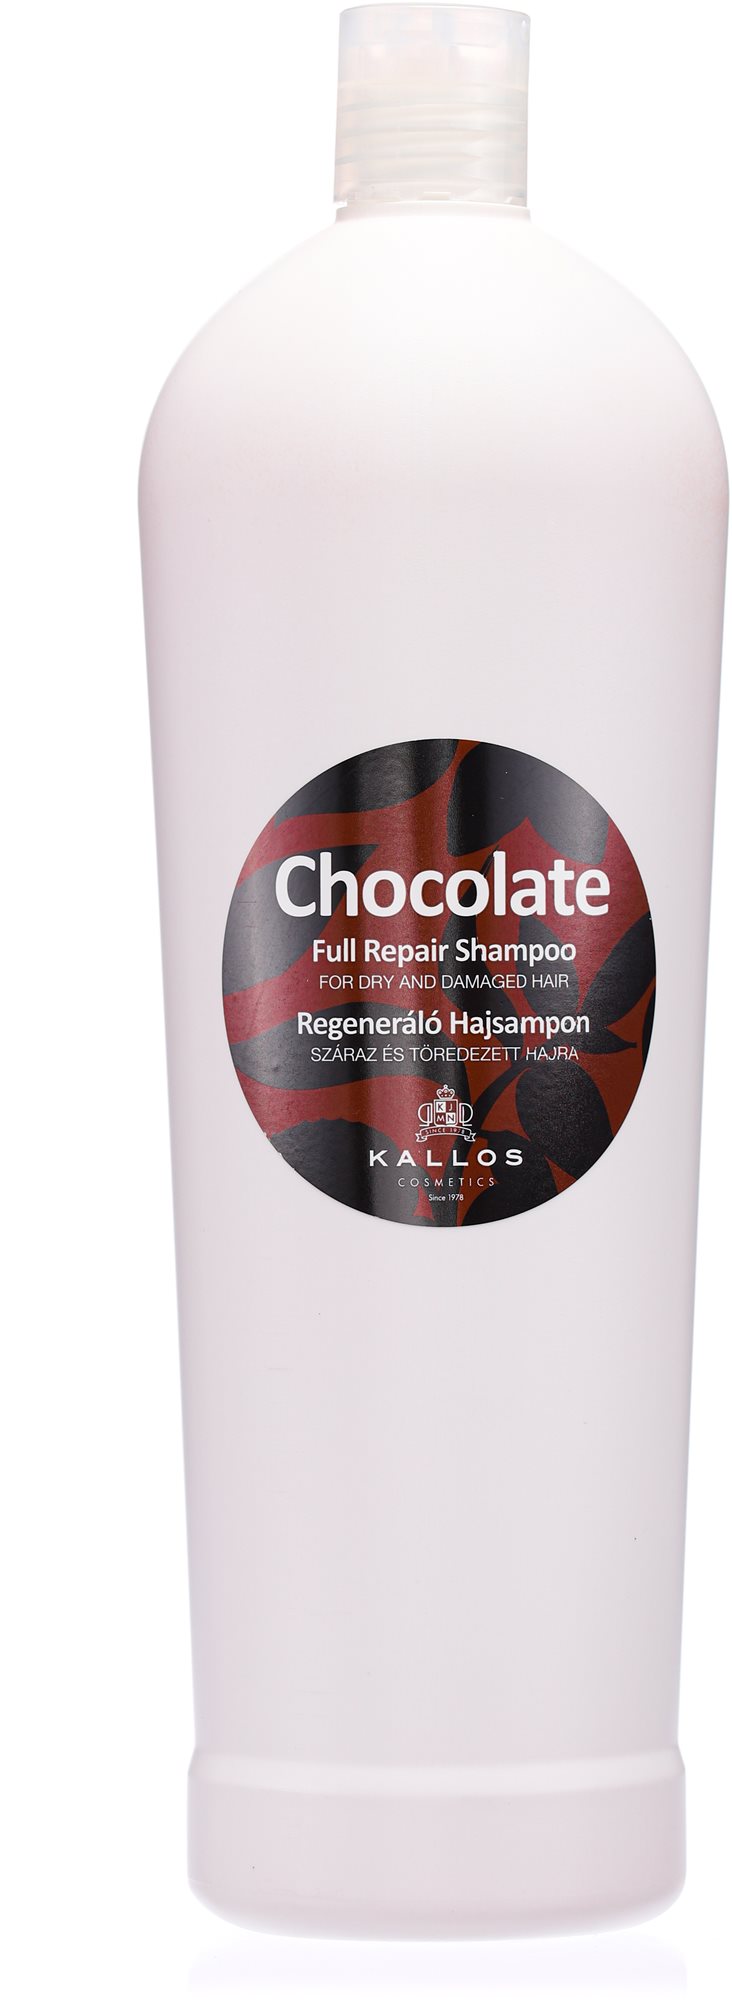 KALLOS Chocolate Full Repair Shampoo 1000 ml